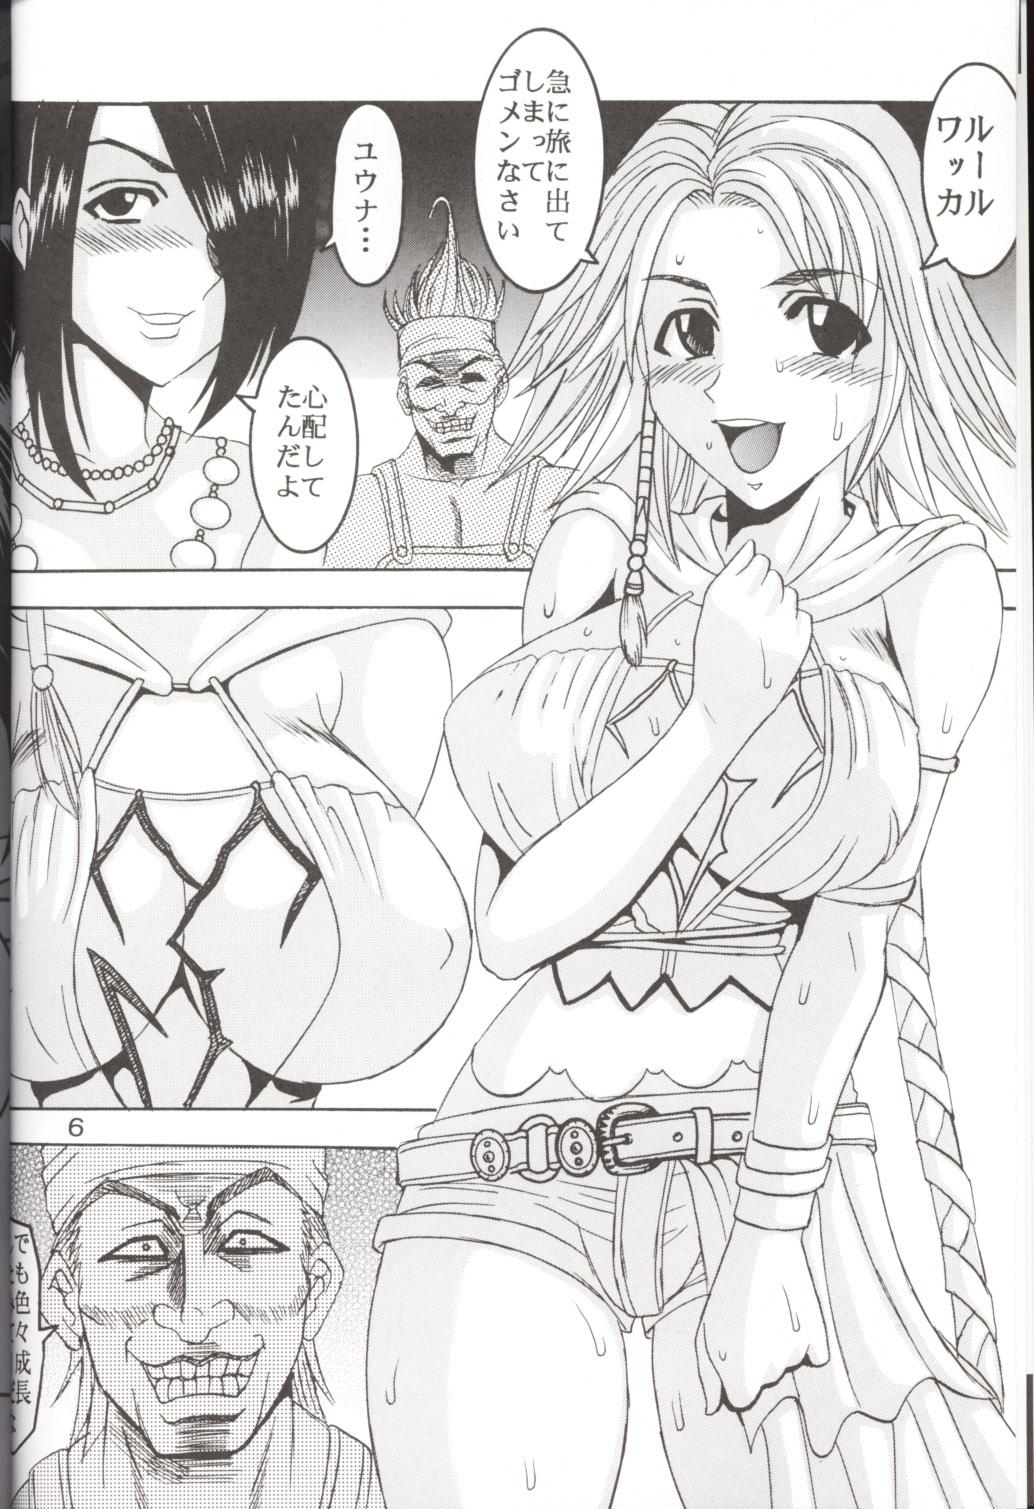 Costume Yuna a la Mode 5 - Final fantasy x Final fantasy x-2 Ano - Page 7